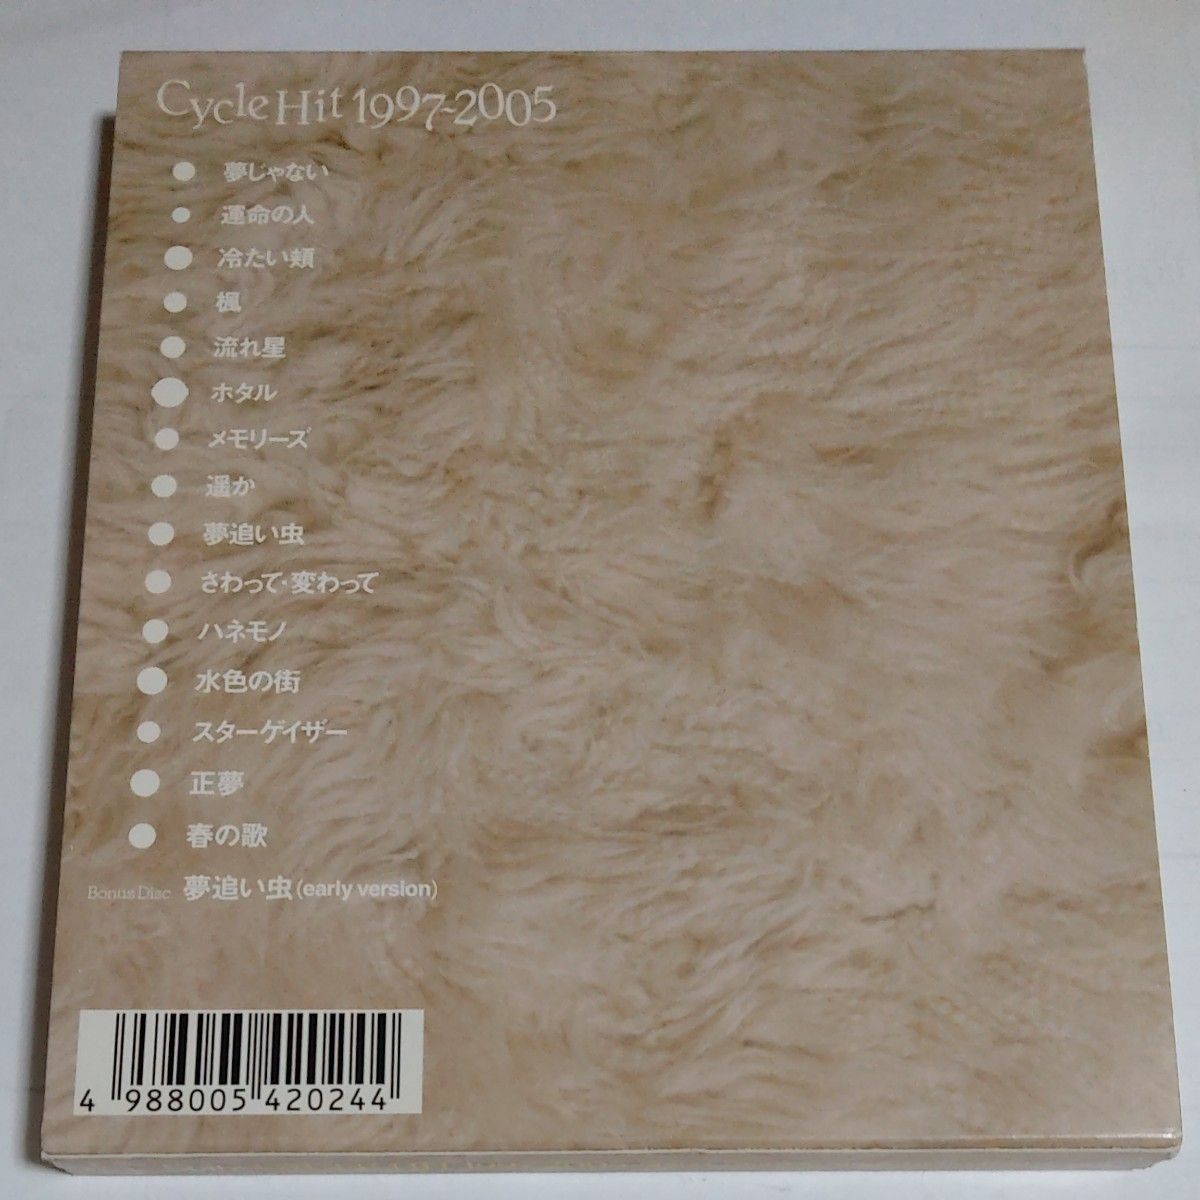 スピッツ/CYCLE HIT 1997-2005 Spitz Complete Single Collection 